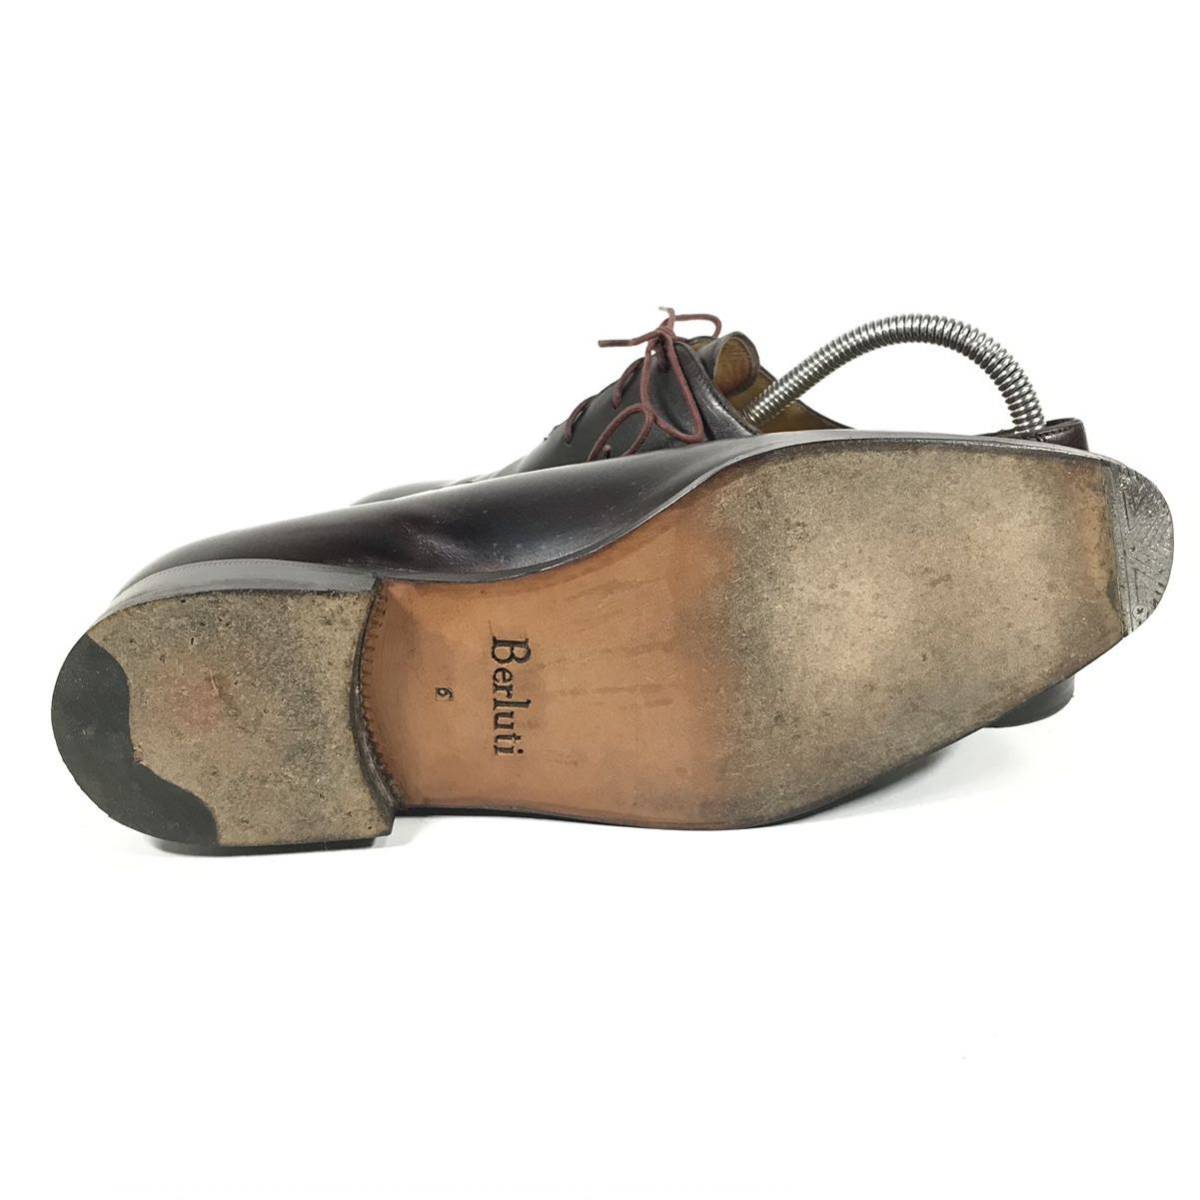 [ Berluti ] genuine article Berluti shoes 25cm business shoes dress shoes original leather for man men's 6